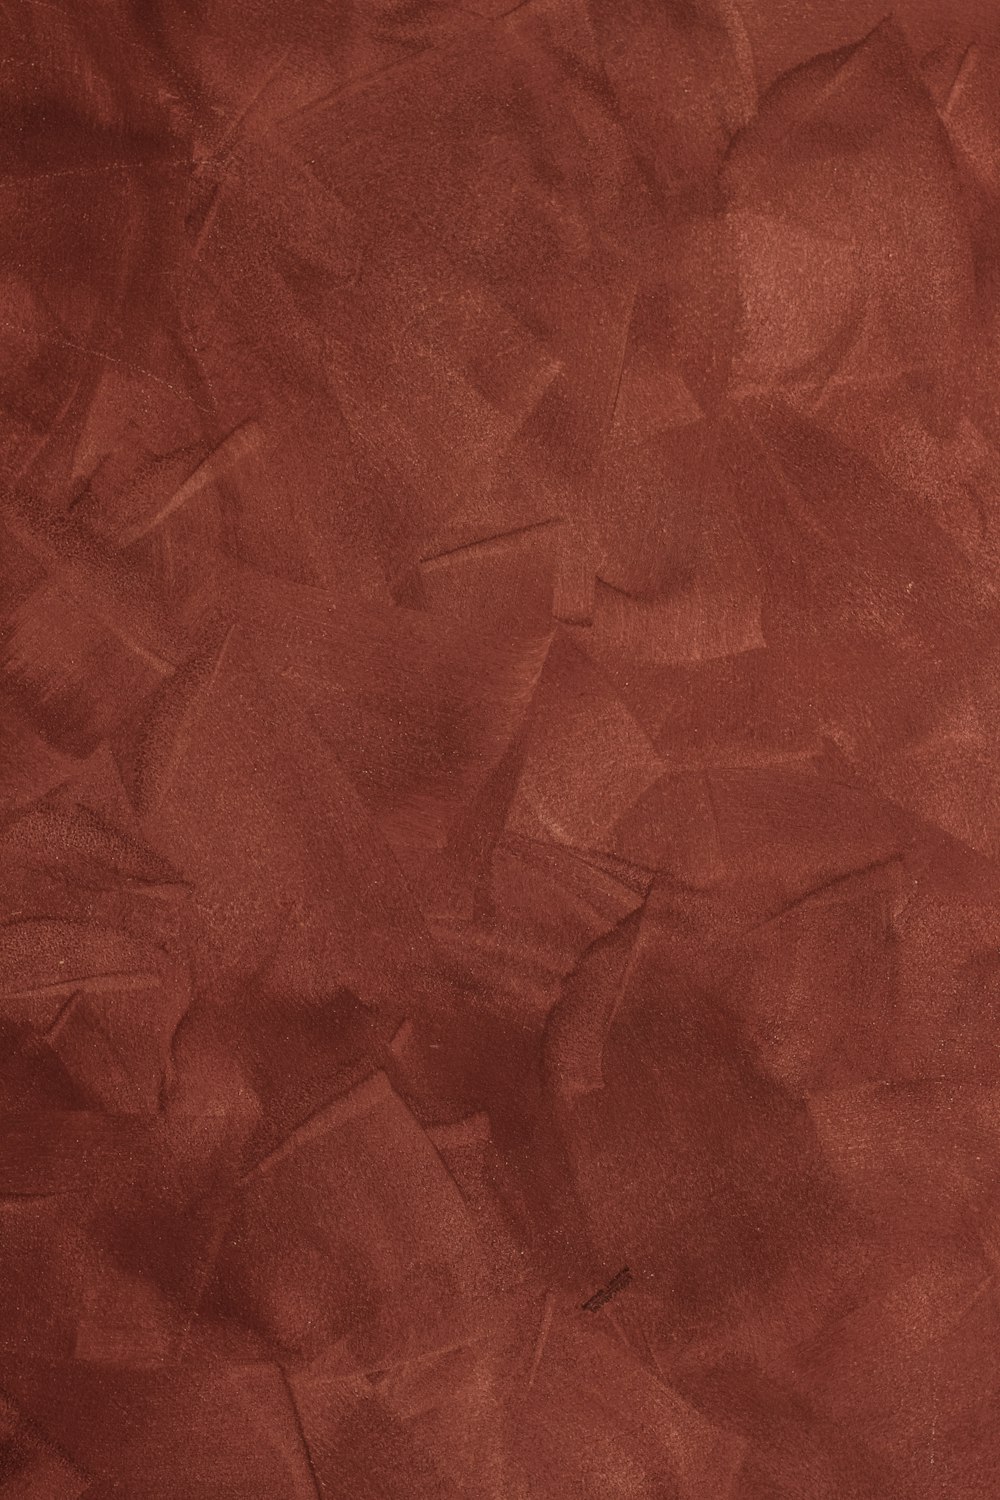 ein roter Hintergrund mit einer rauen Papierstruktur